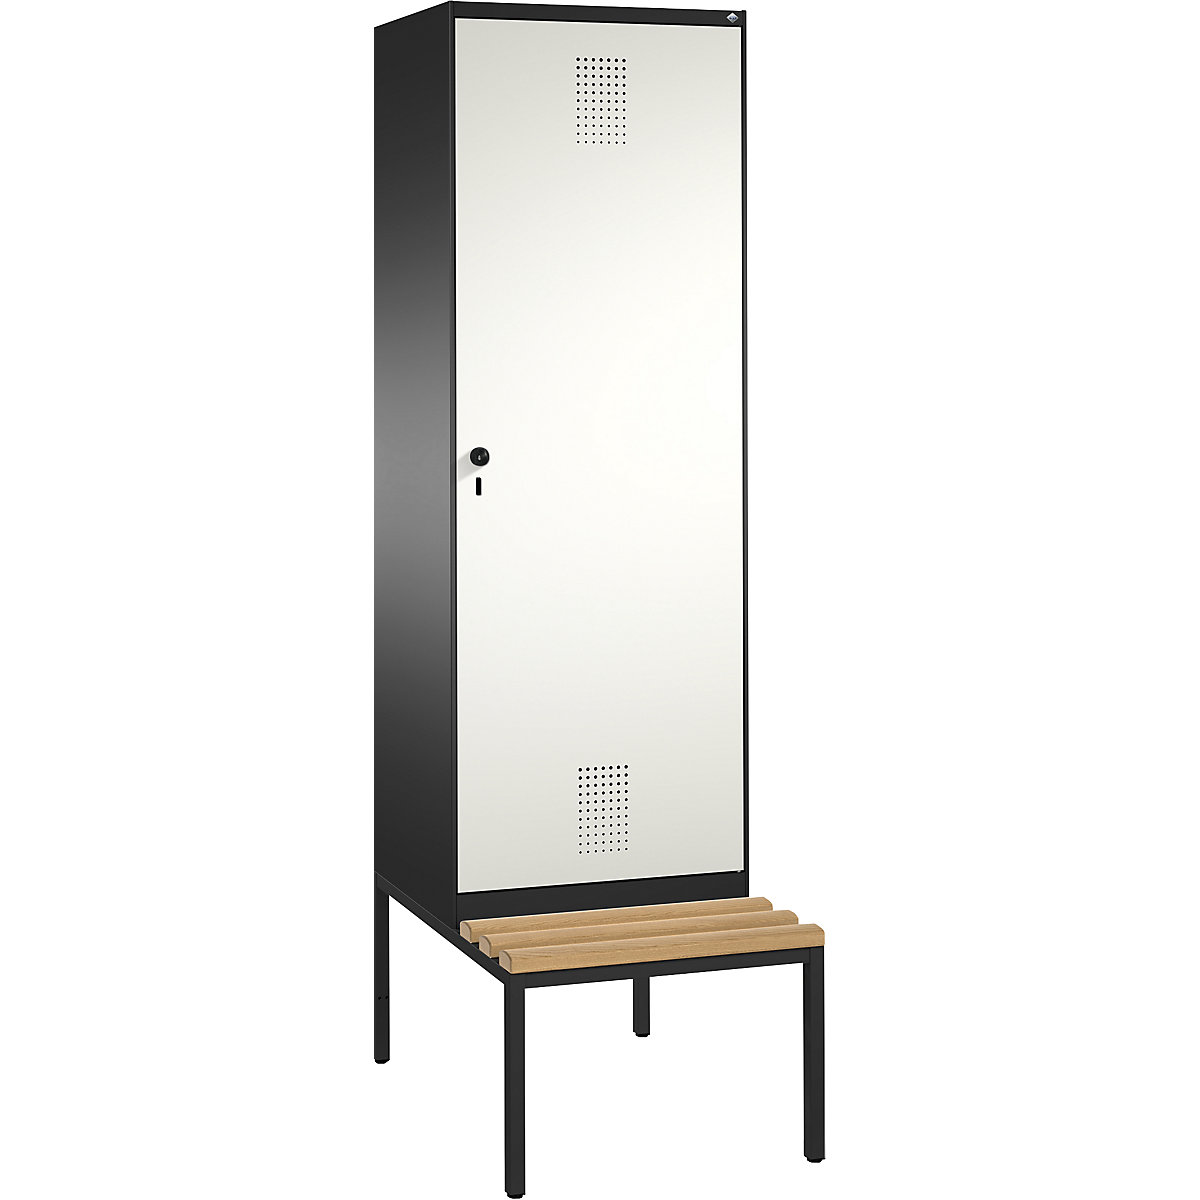 Šatní skříň s lavicí EVOLO s dveřmi přes 2 oddíly – C+P, 2 oddíly, 1 dveře, šířka oddílu 300 mm, černošedá / čistá bílá-16